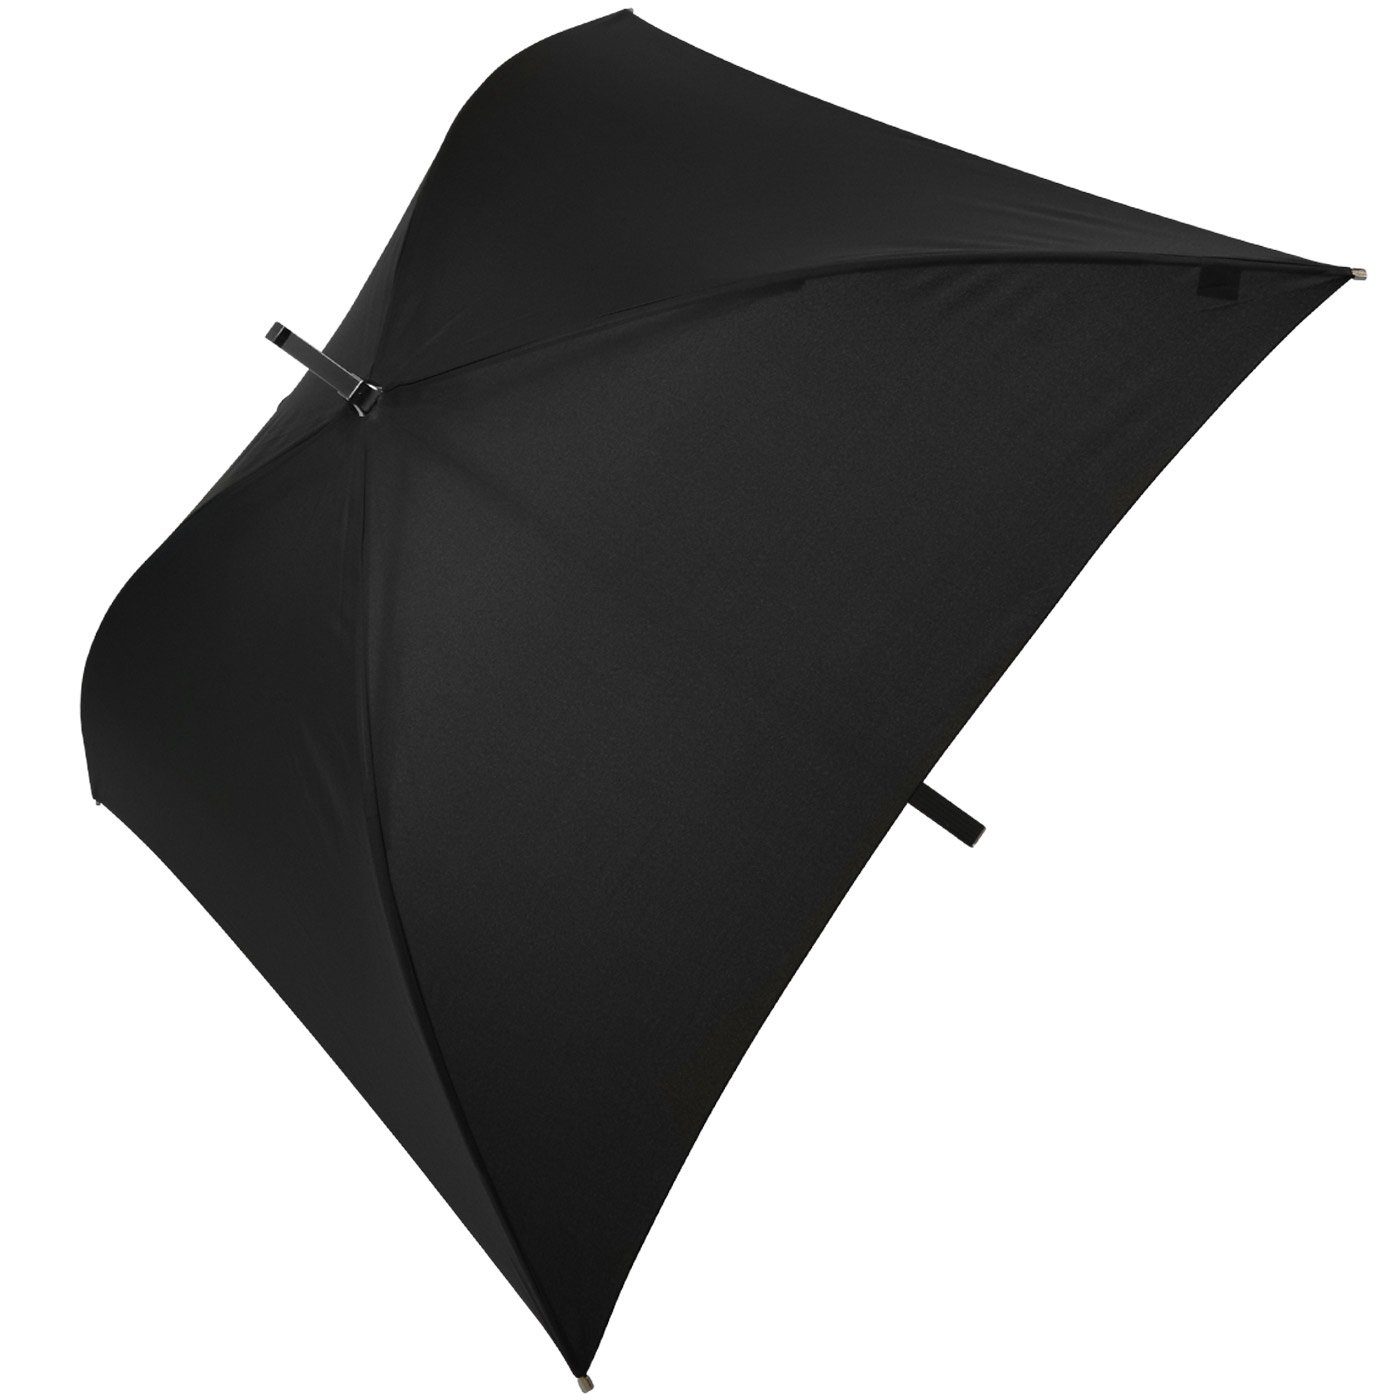 Square® Langregenschirm Impliva besondere quadratischer Regenschirm schwarz der All voll ganz Regenschirm,